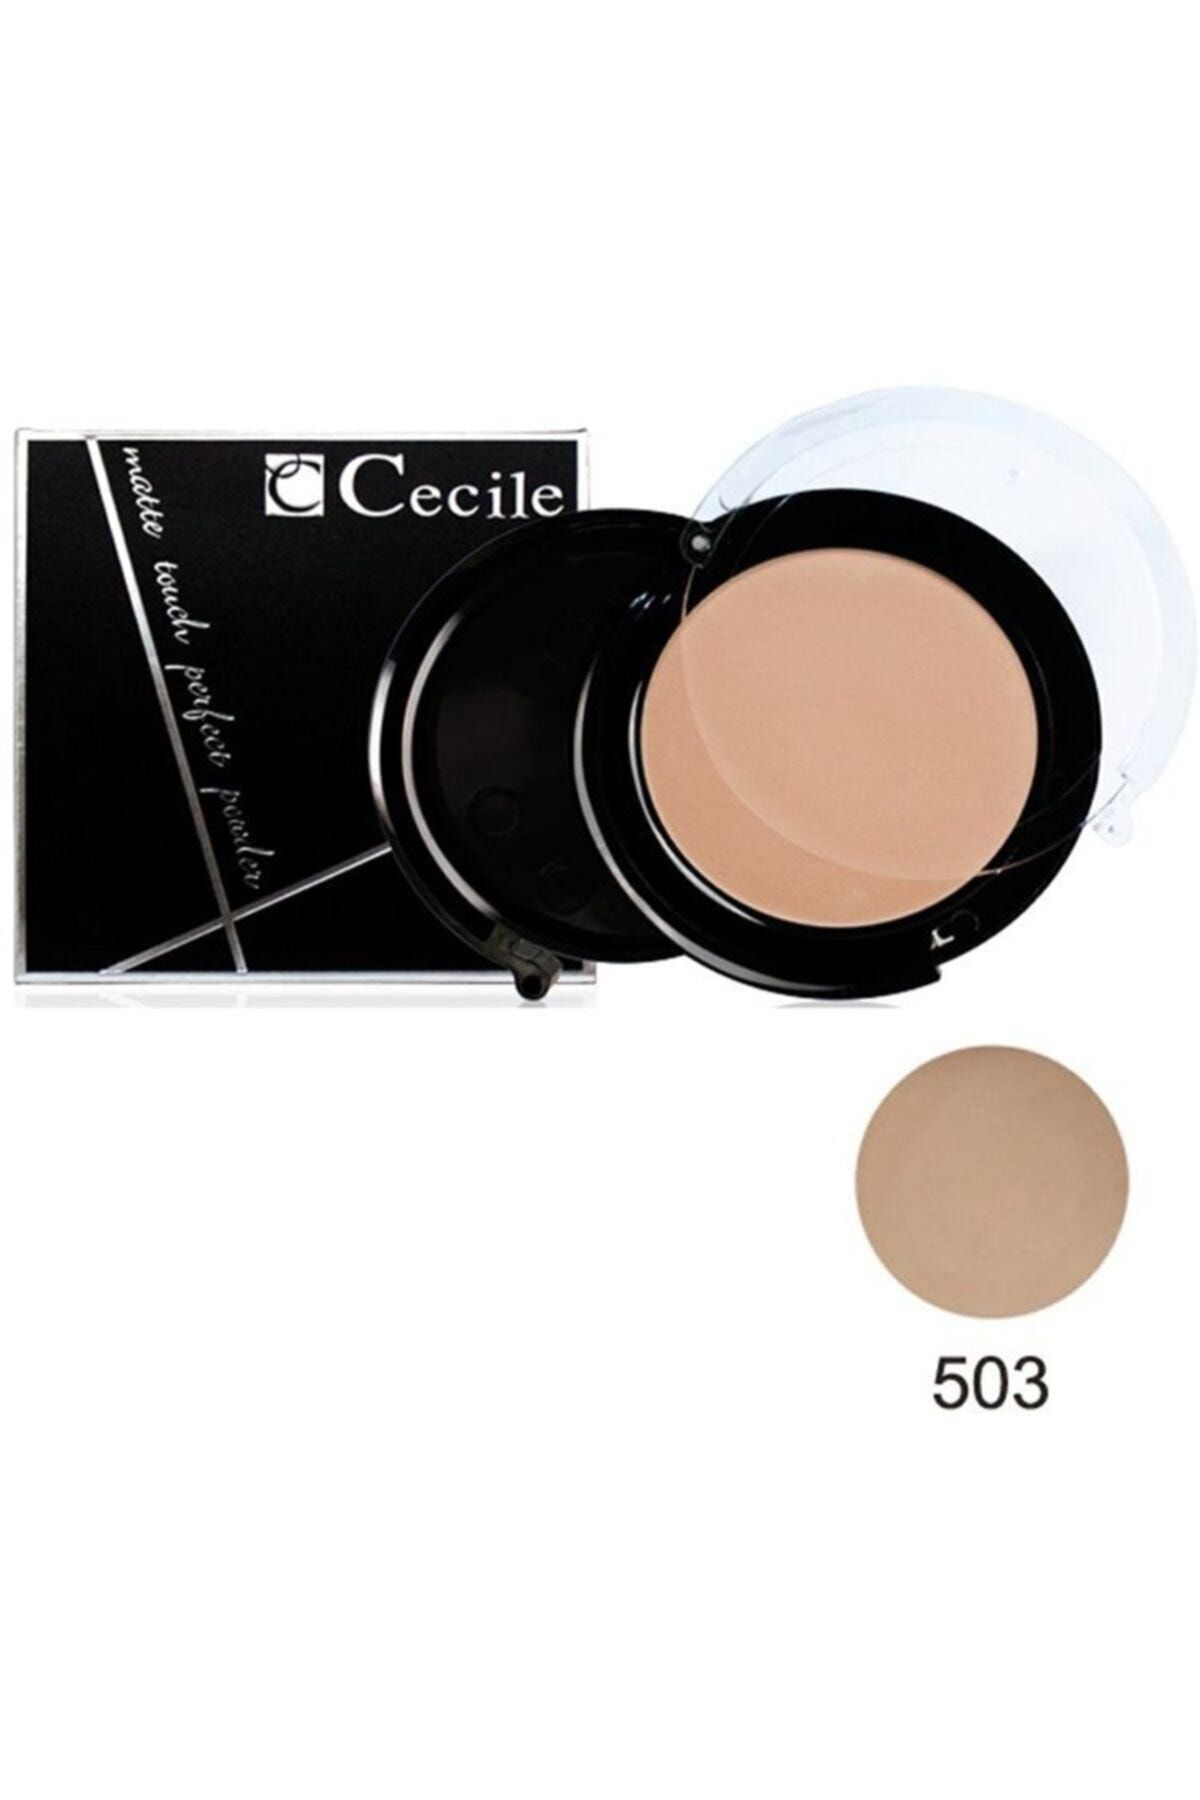 Cecile Matte Touch Perfect Powder Pudra No 503